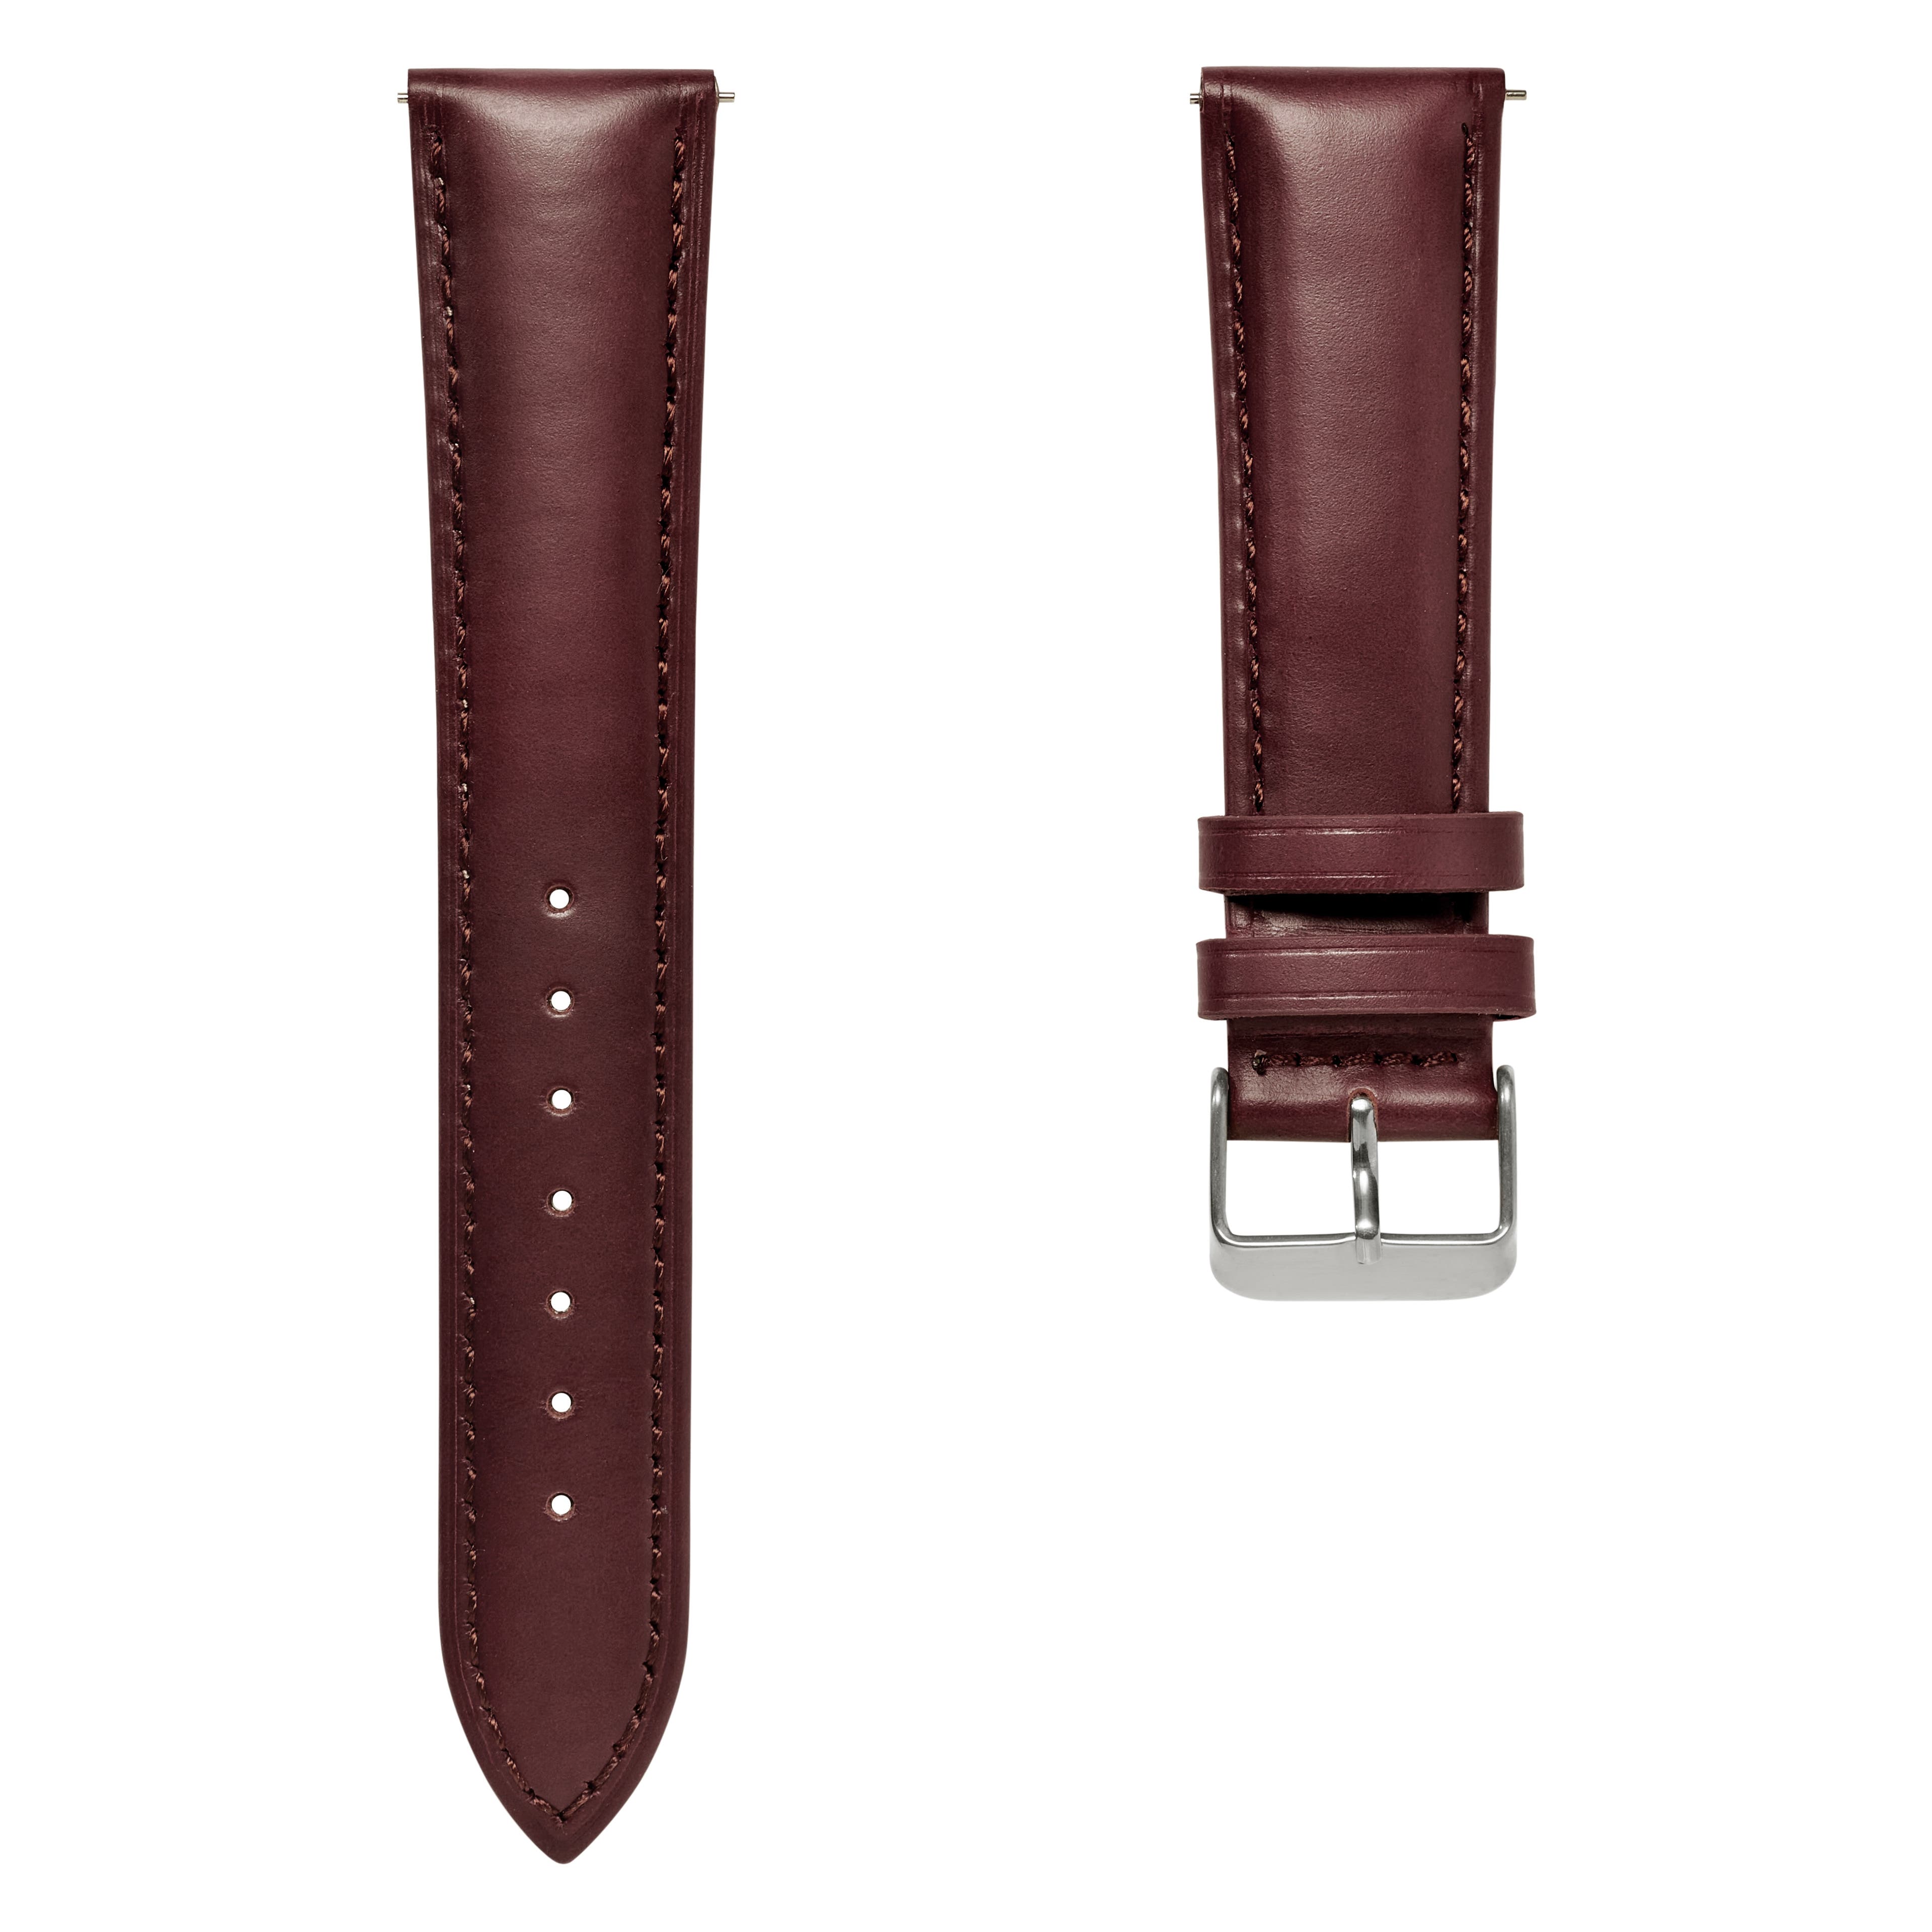 Bracelet de montre en cuir marron foncé 18 mm avec boucle argentée - Attache rapide